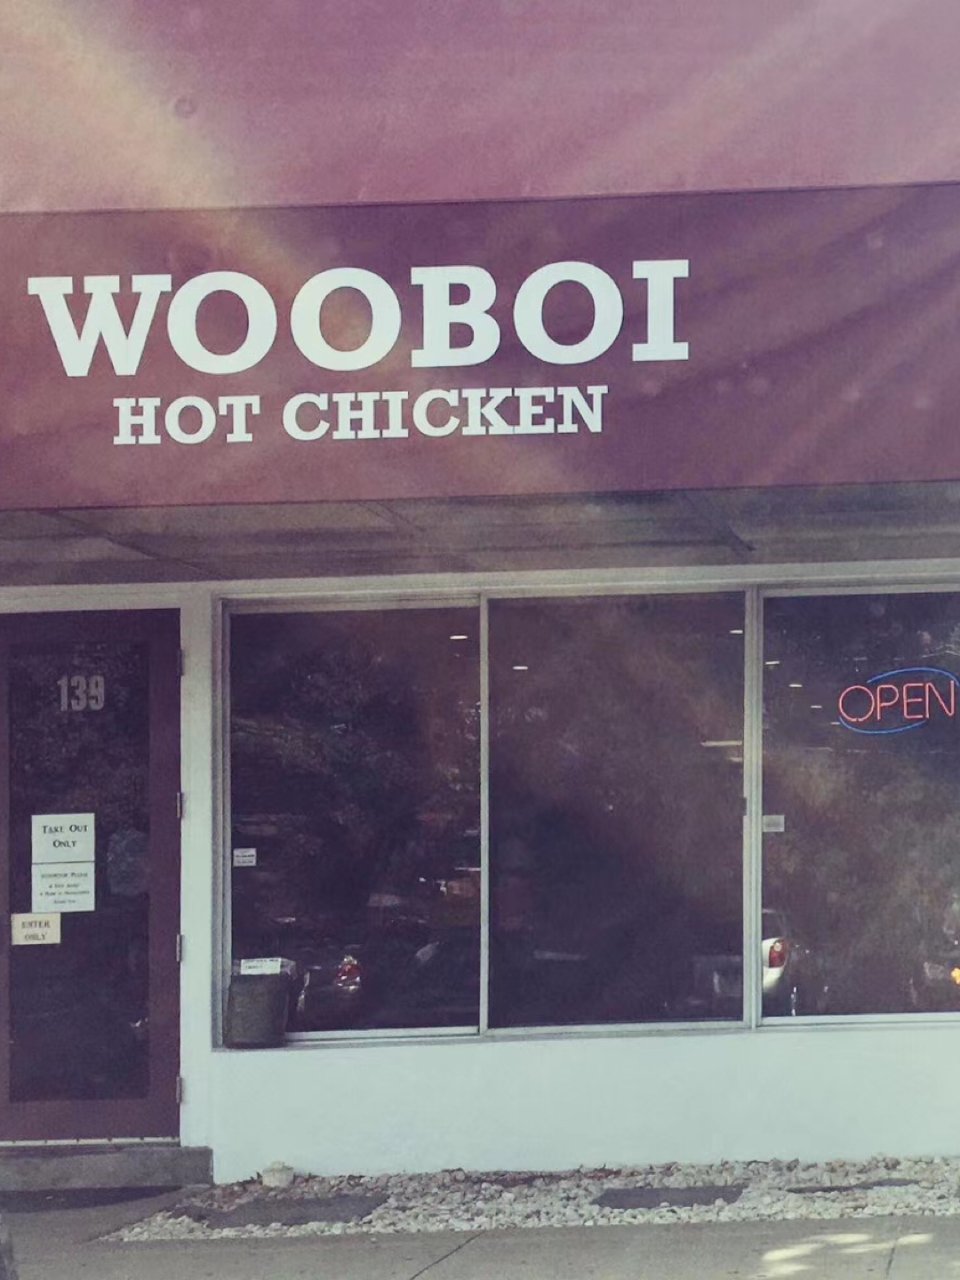 Wooboi hot chicken 近...